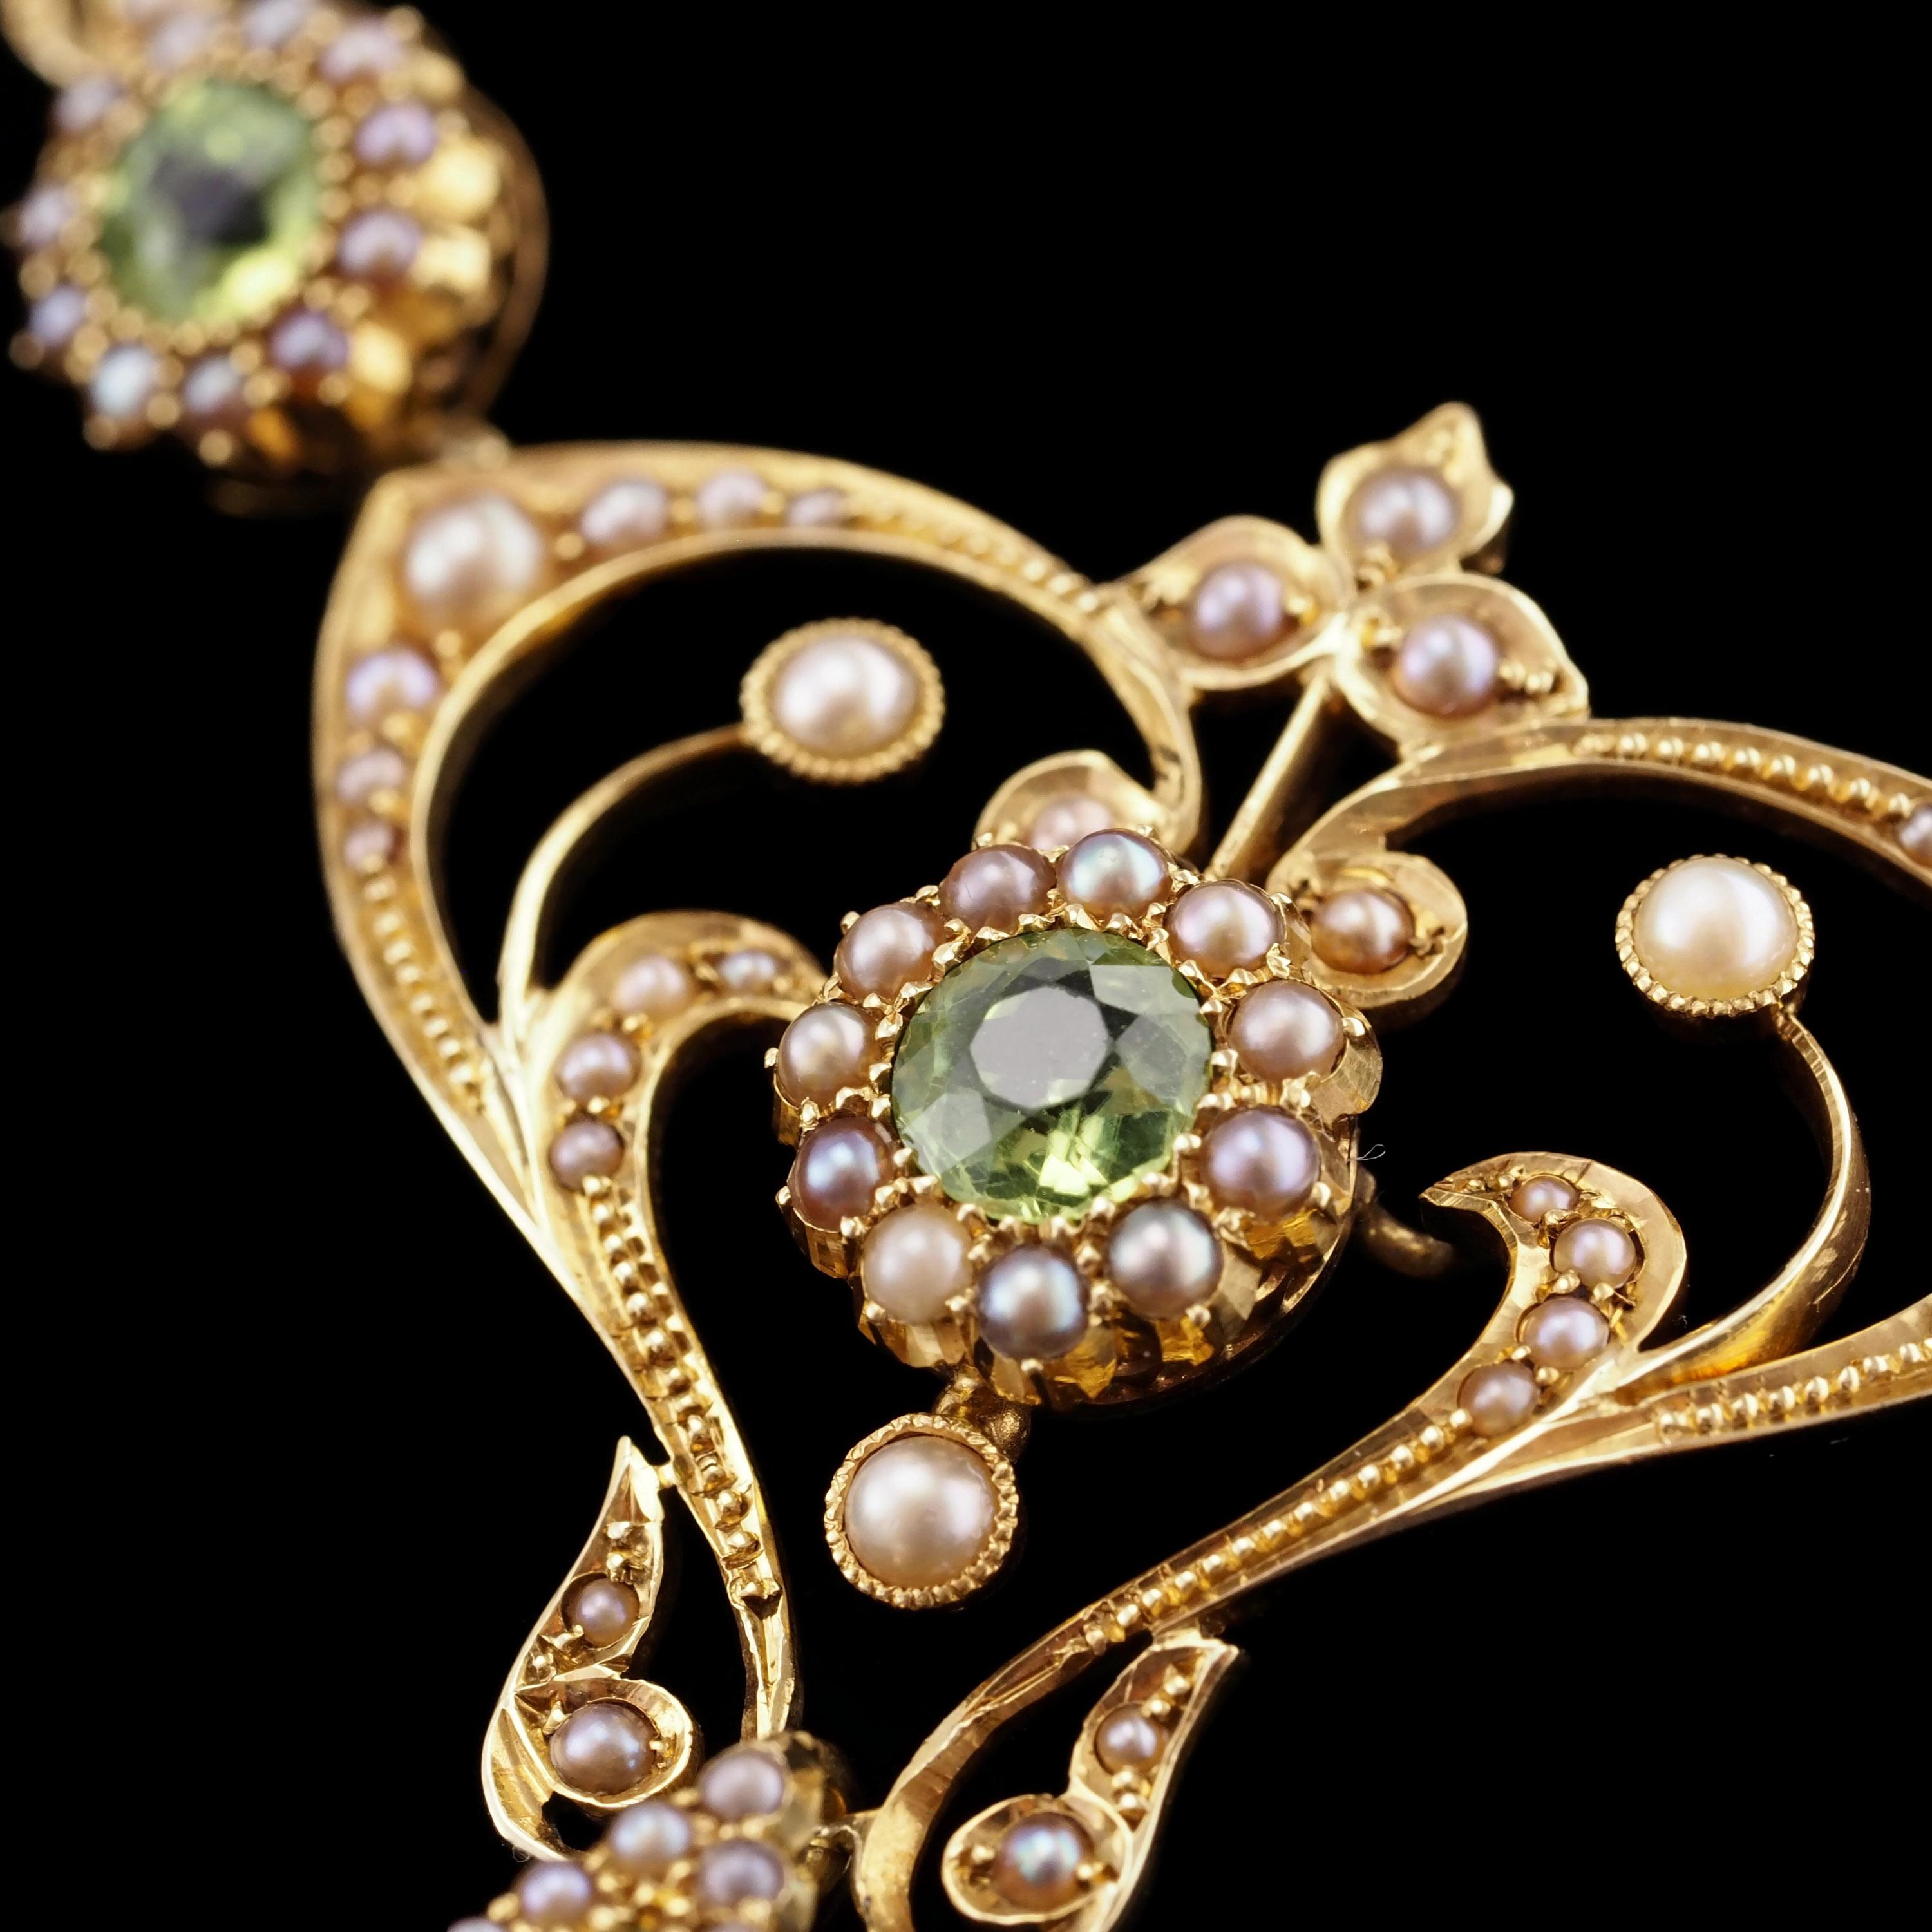 Antique 15K Gold Peridot & Pearl Lavalier Necklace - Art Nouveau c.1900s 9